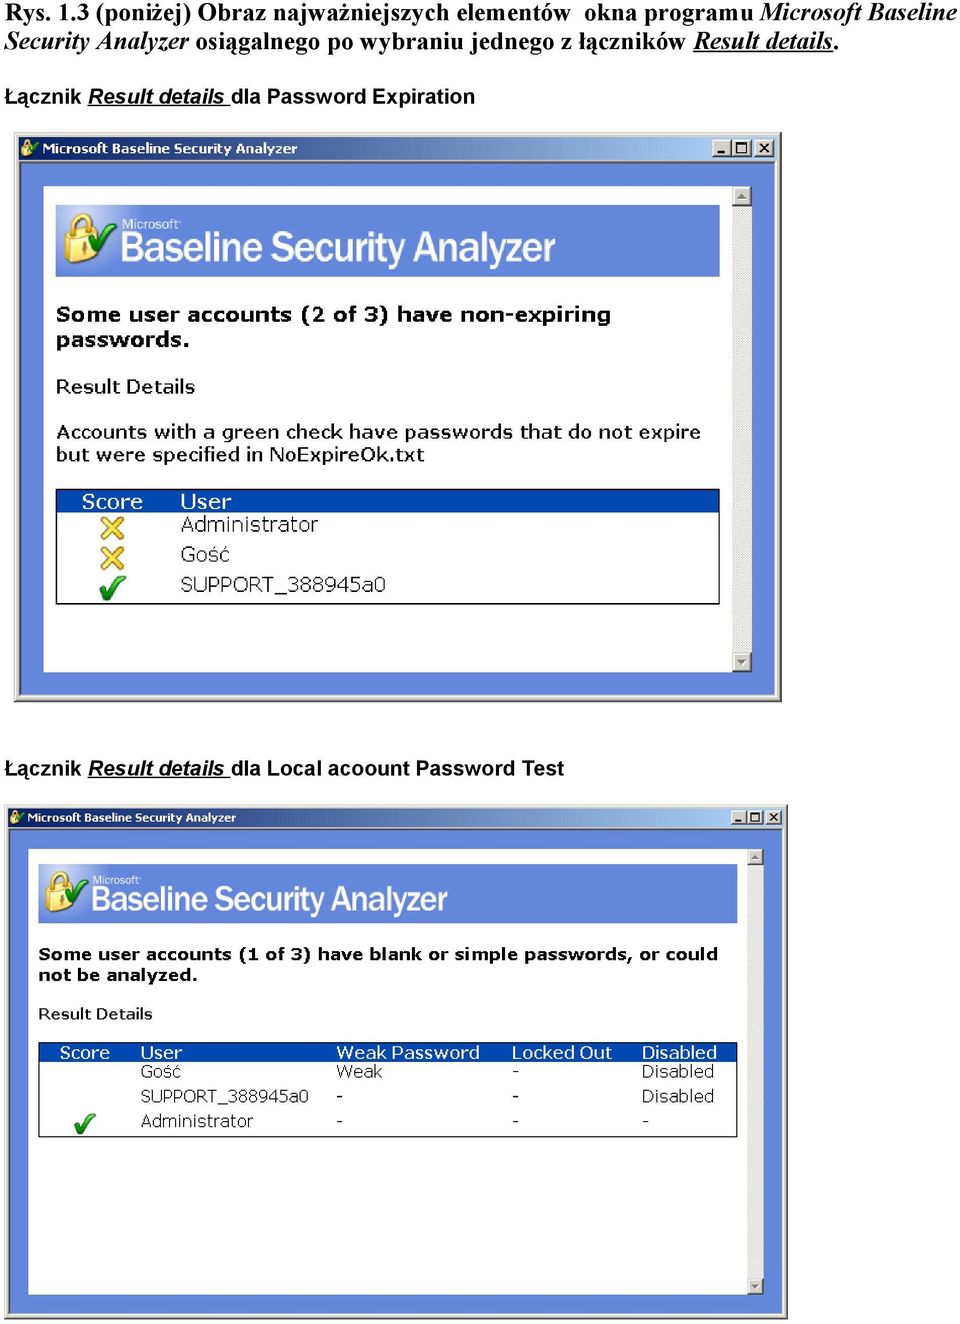 Microsoft Baseline Security Analyzer osiągalnego po wybraniu